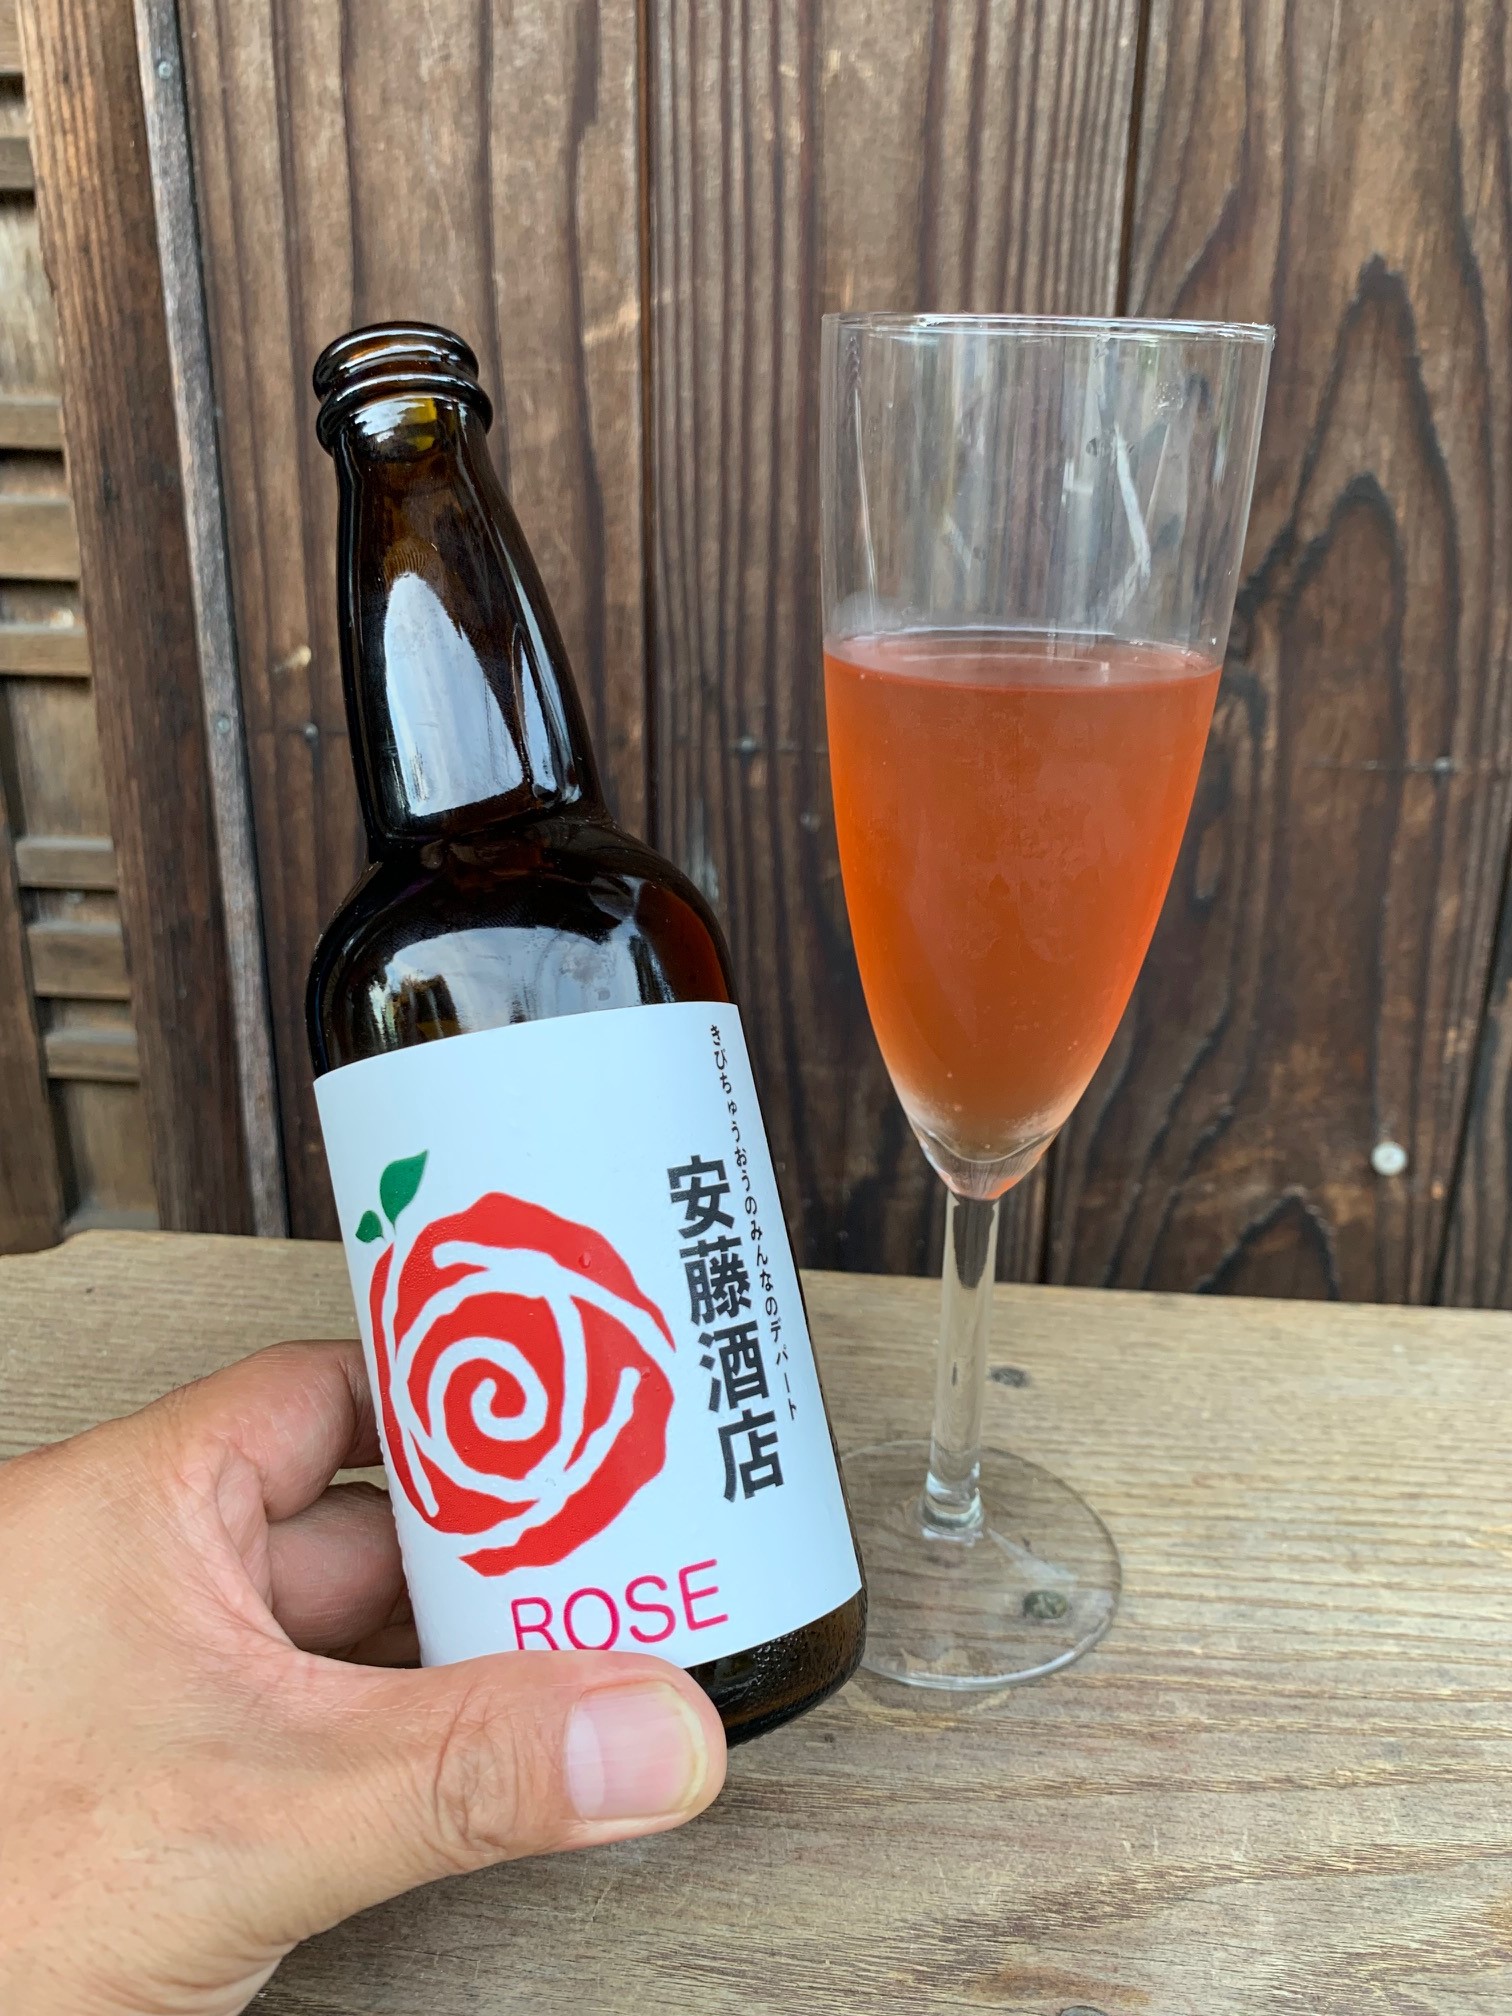 オリジナルクラフトビール「ROSE」4本セット